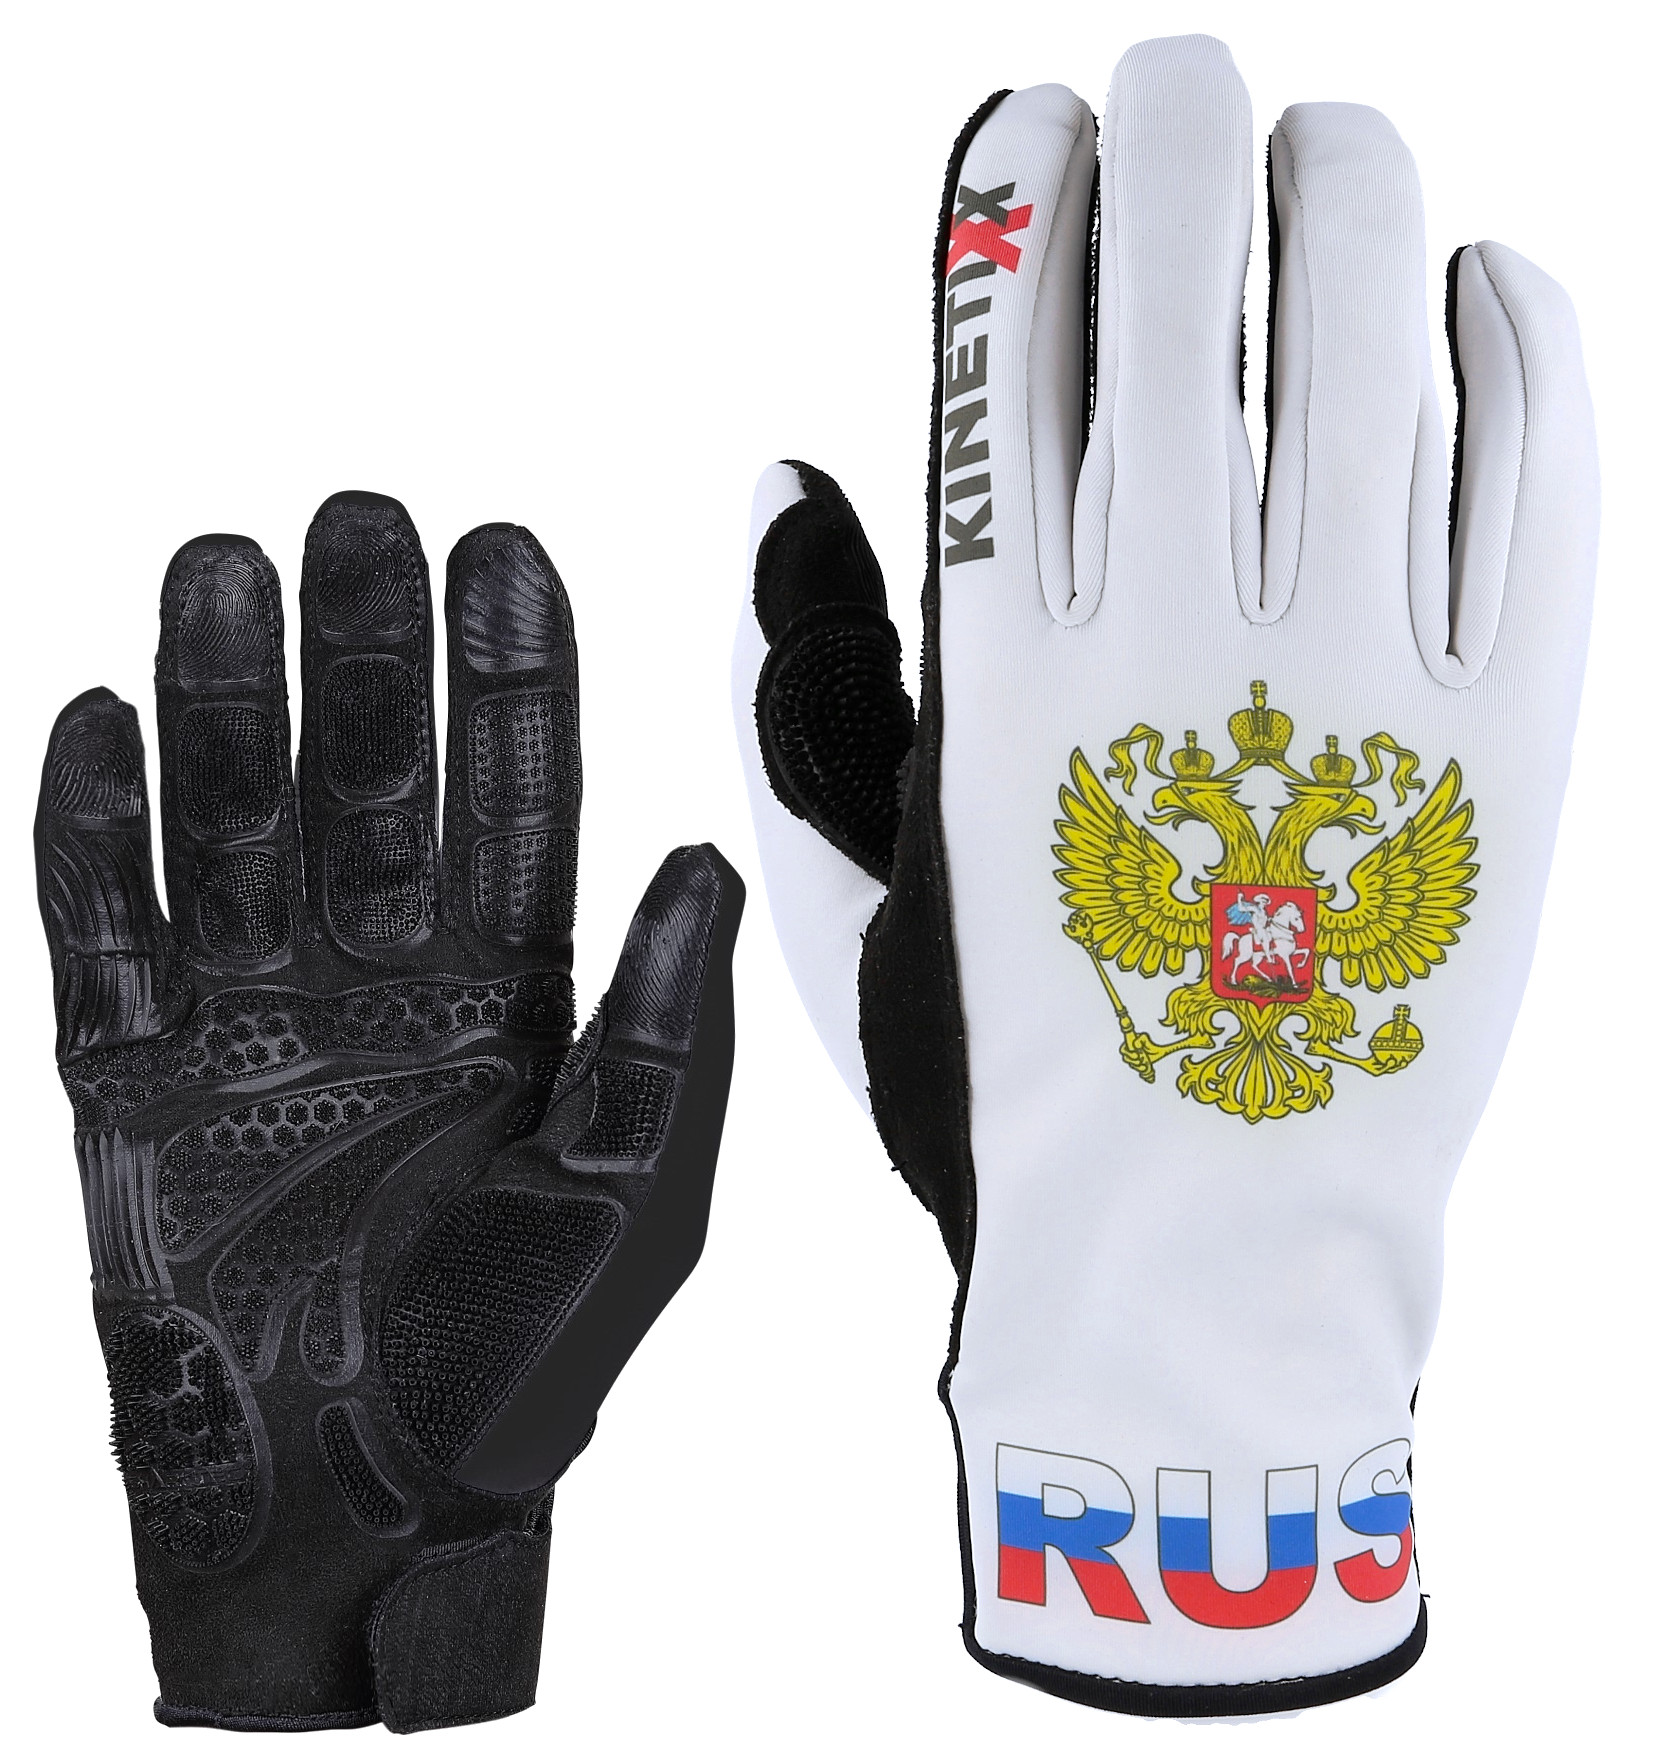 Лыжные перчатки KinetiXx сборная России